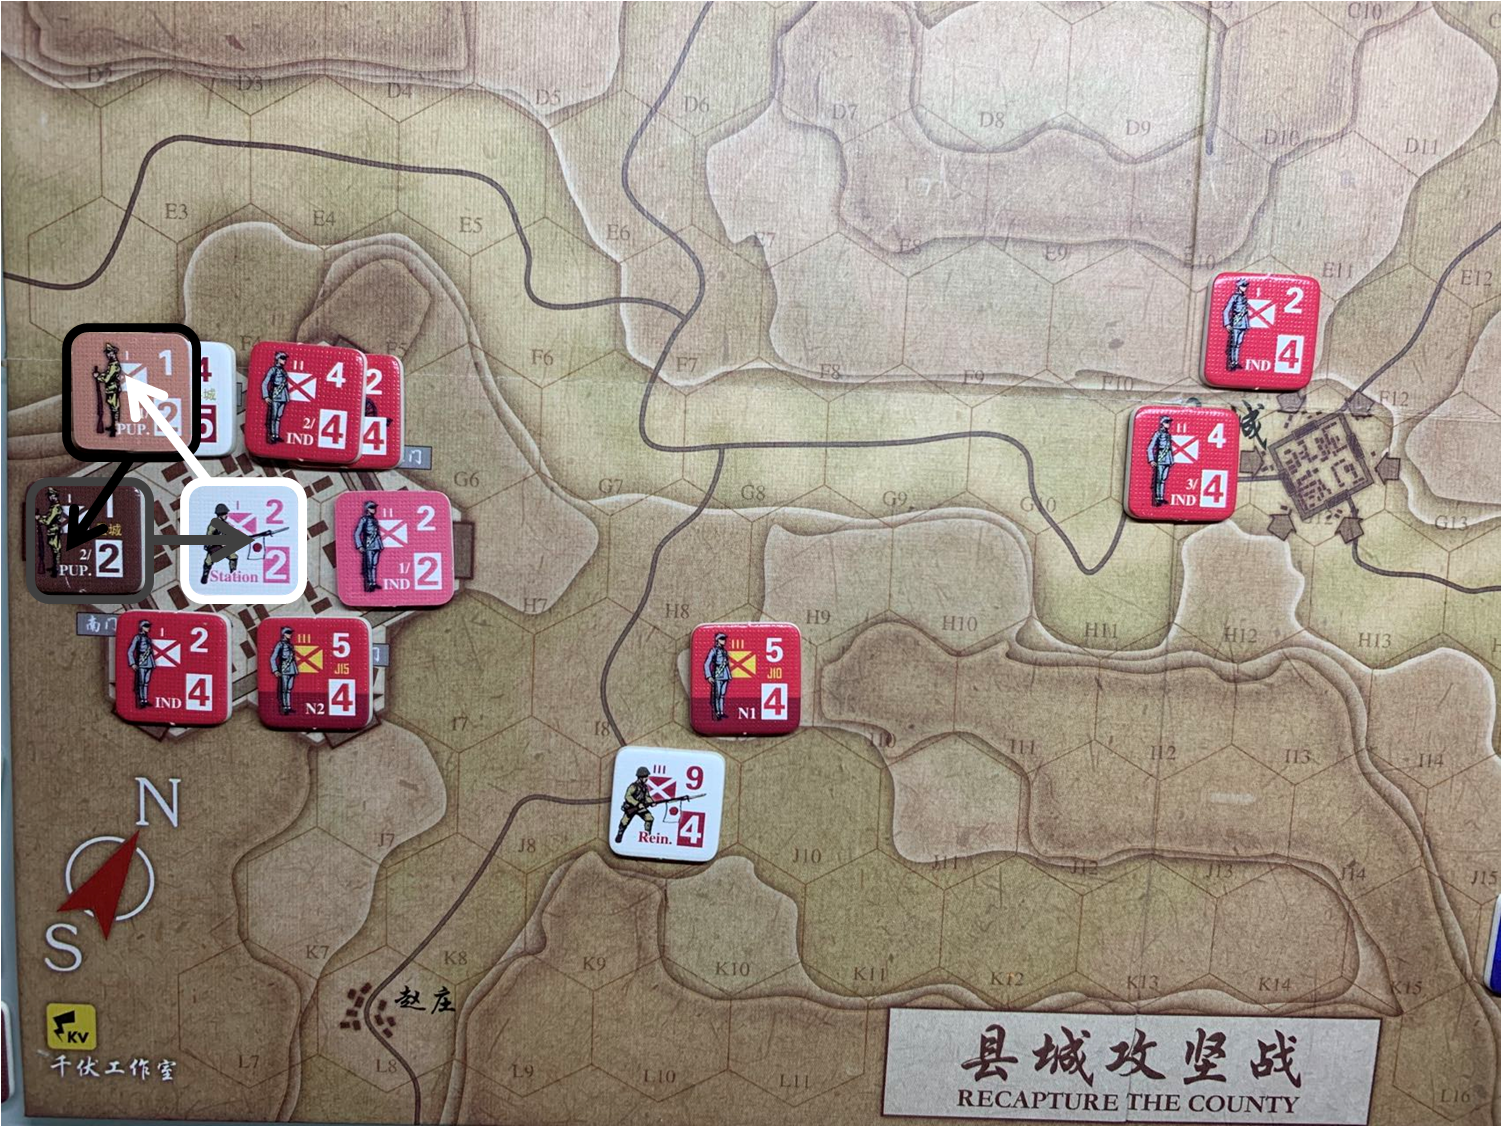 第二回合县城内日军Station和伪军1/PUP.、伪军2/PUP.守城部队对于移动命令5的执行计划